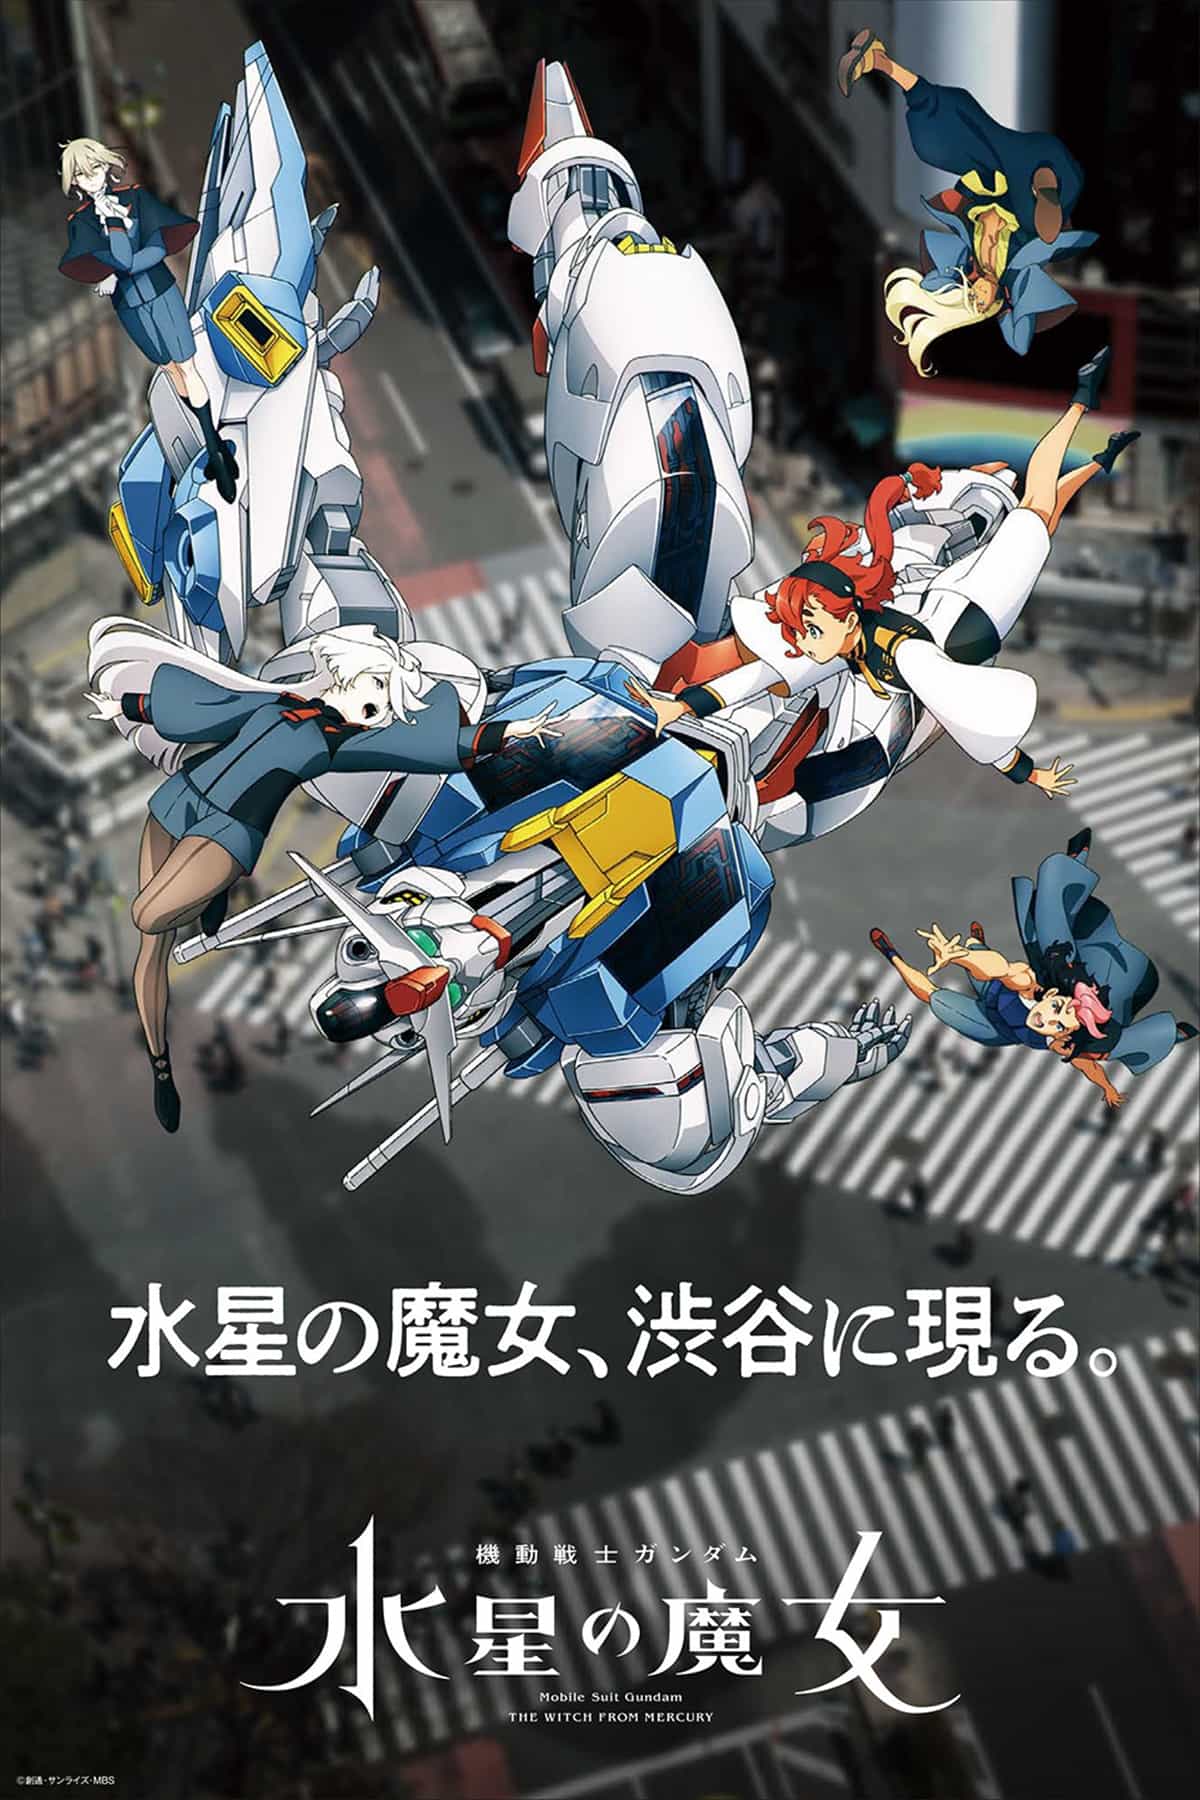 『機動戦士ガンダム 水星の魔女』が渋谷をジャックし、ARフォトを楽しめるポスターなどが50か所以上に登場